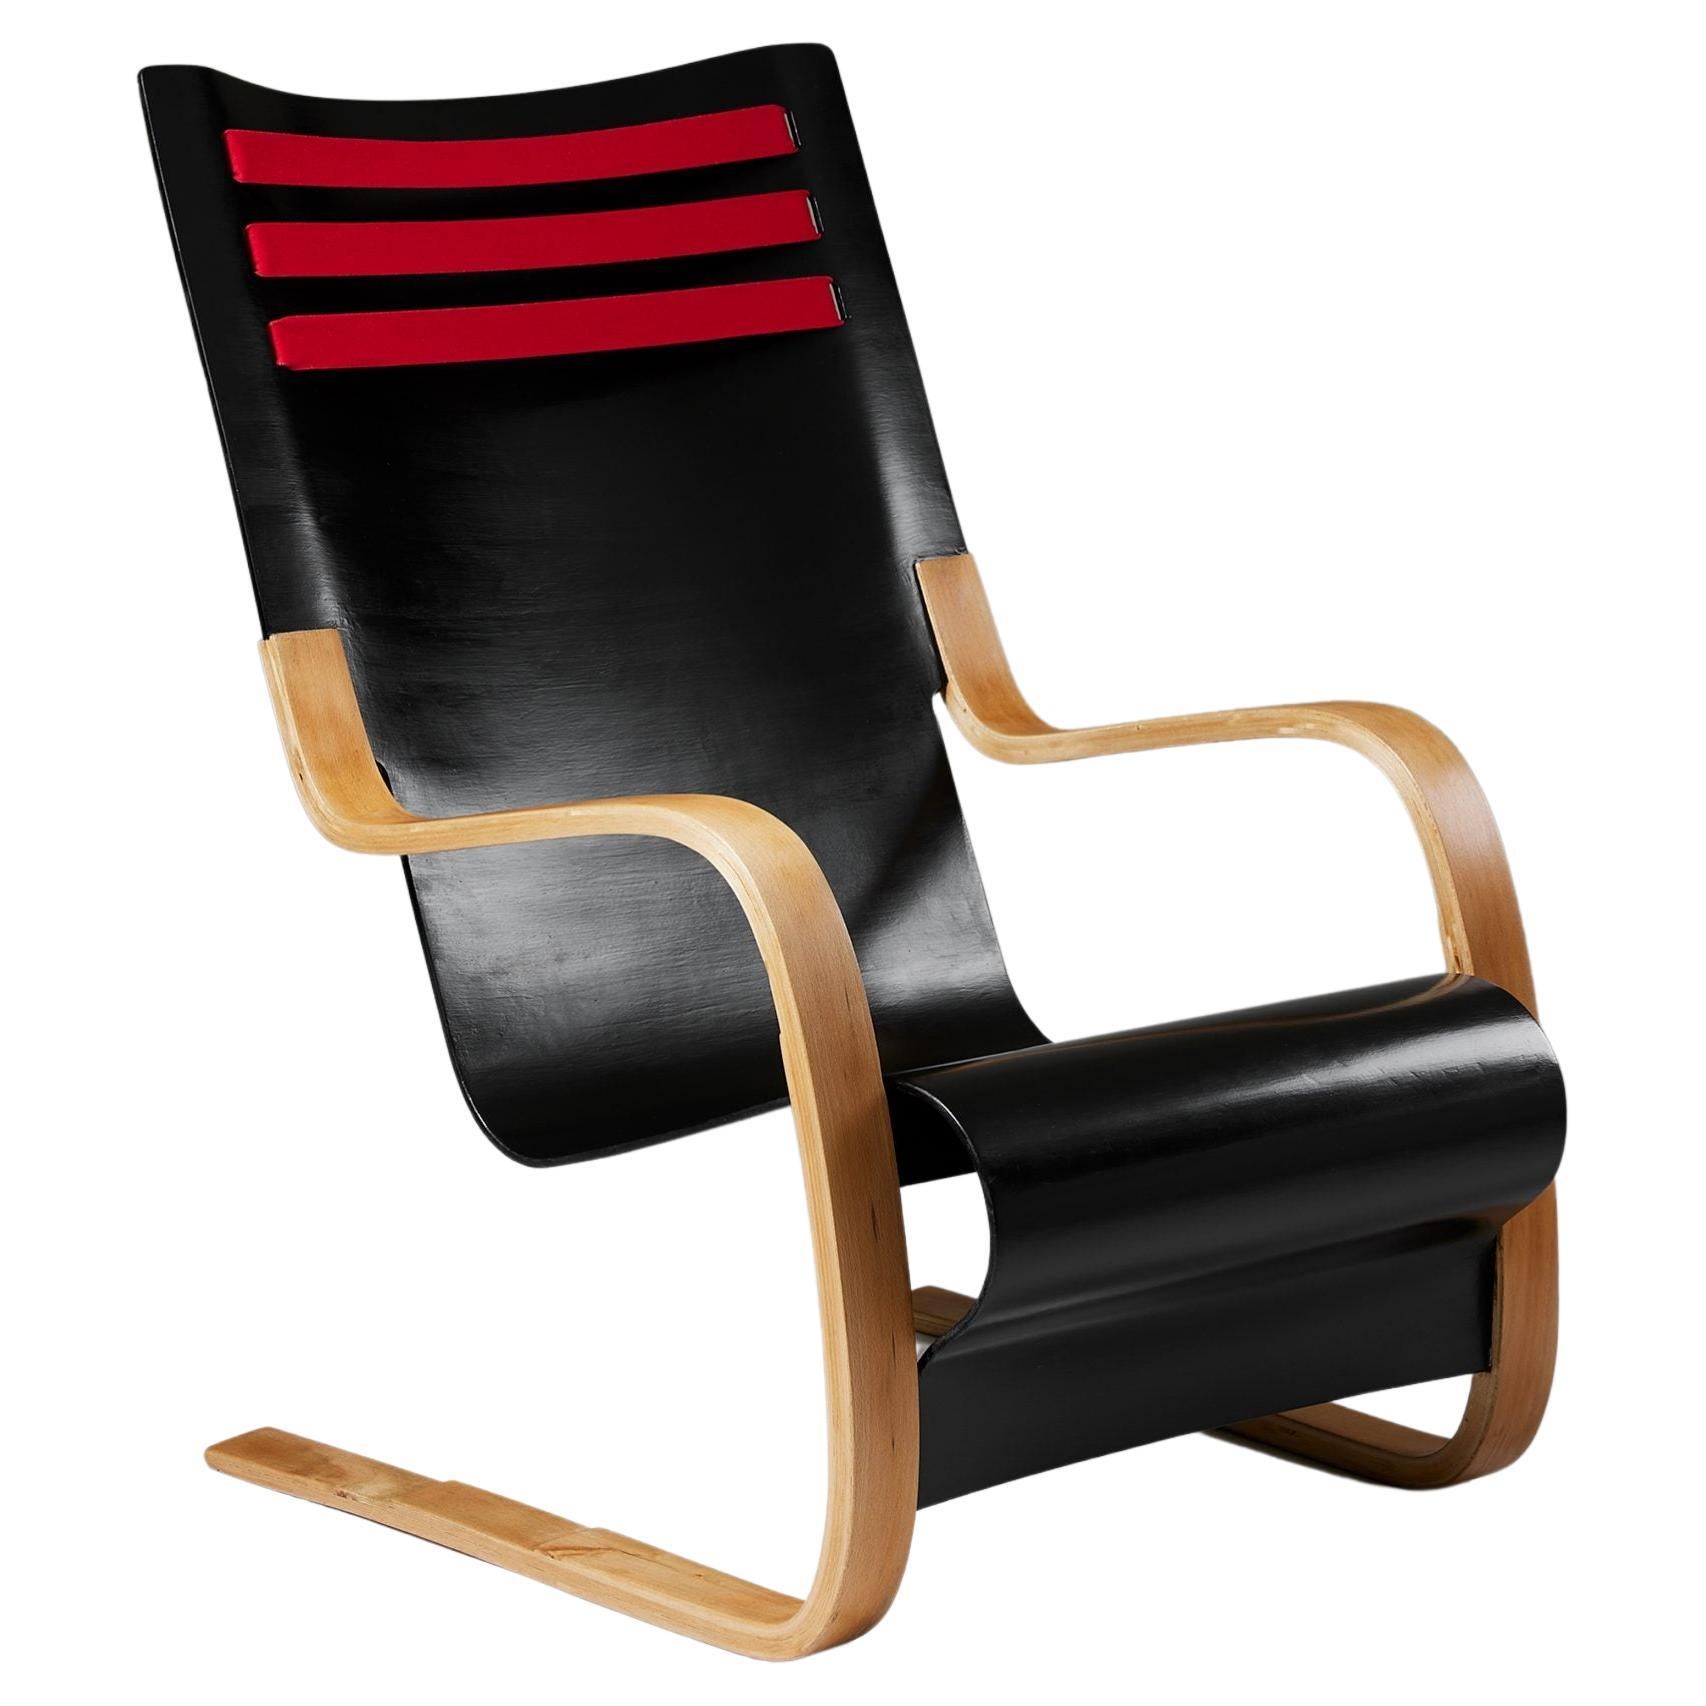 Rare chaise à dossier haut, modèle 402, conçue par Alvar Aalto+Aalto pour OY Huonekalu-Ja Raken